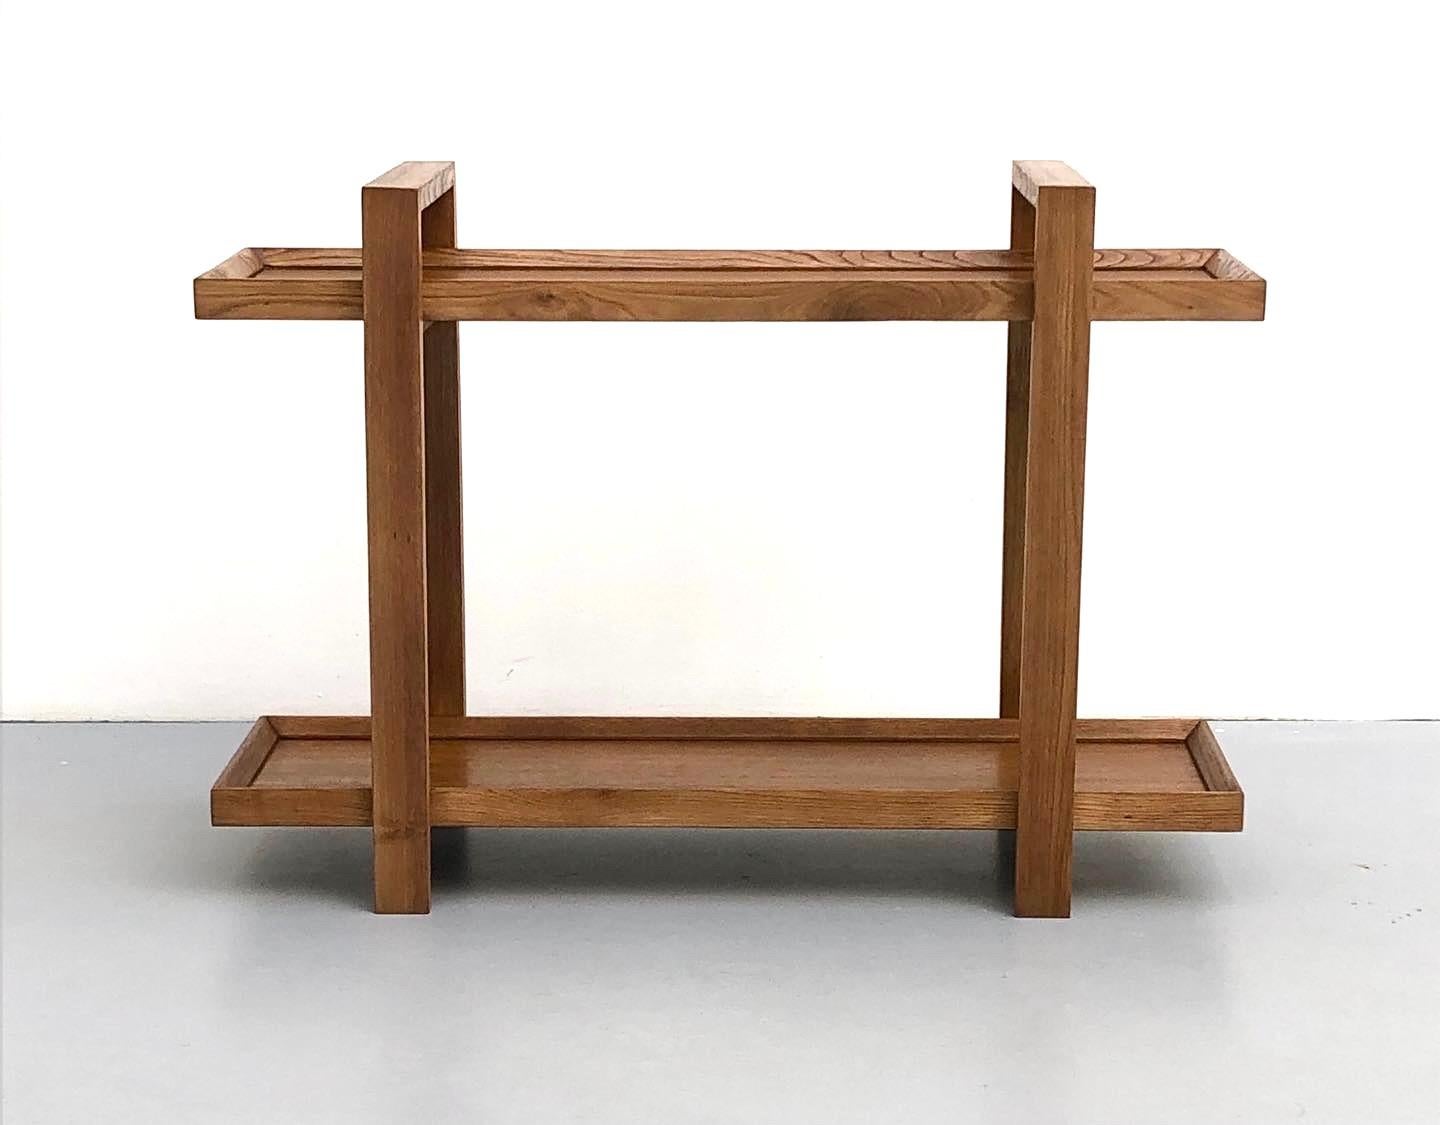 Console/table à dessert réalisée par René Gabriel, 1940

L'objet se compose de deux arcs reliés par deux plateaux, tous réalisés en bois de chêne. Avec sa simplicité esthétique et ses lignes fortes et décisives, cette pièce est plus contemporaine